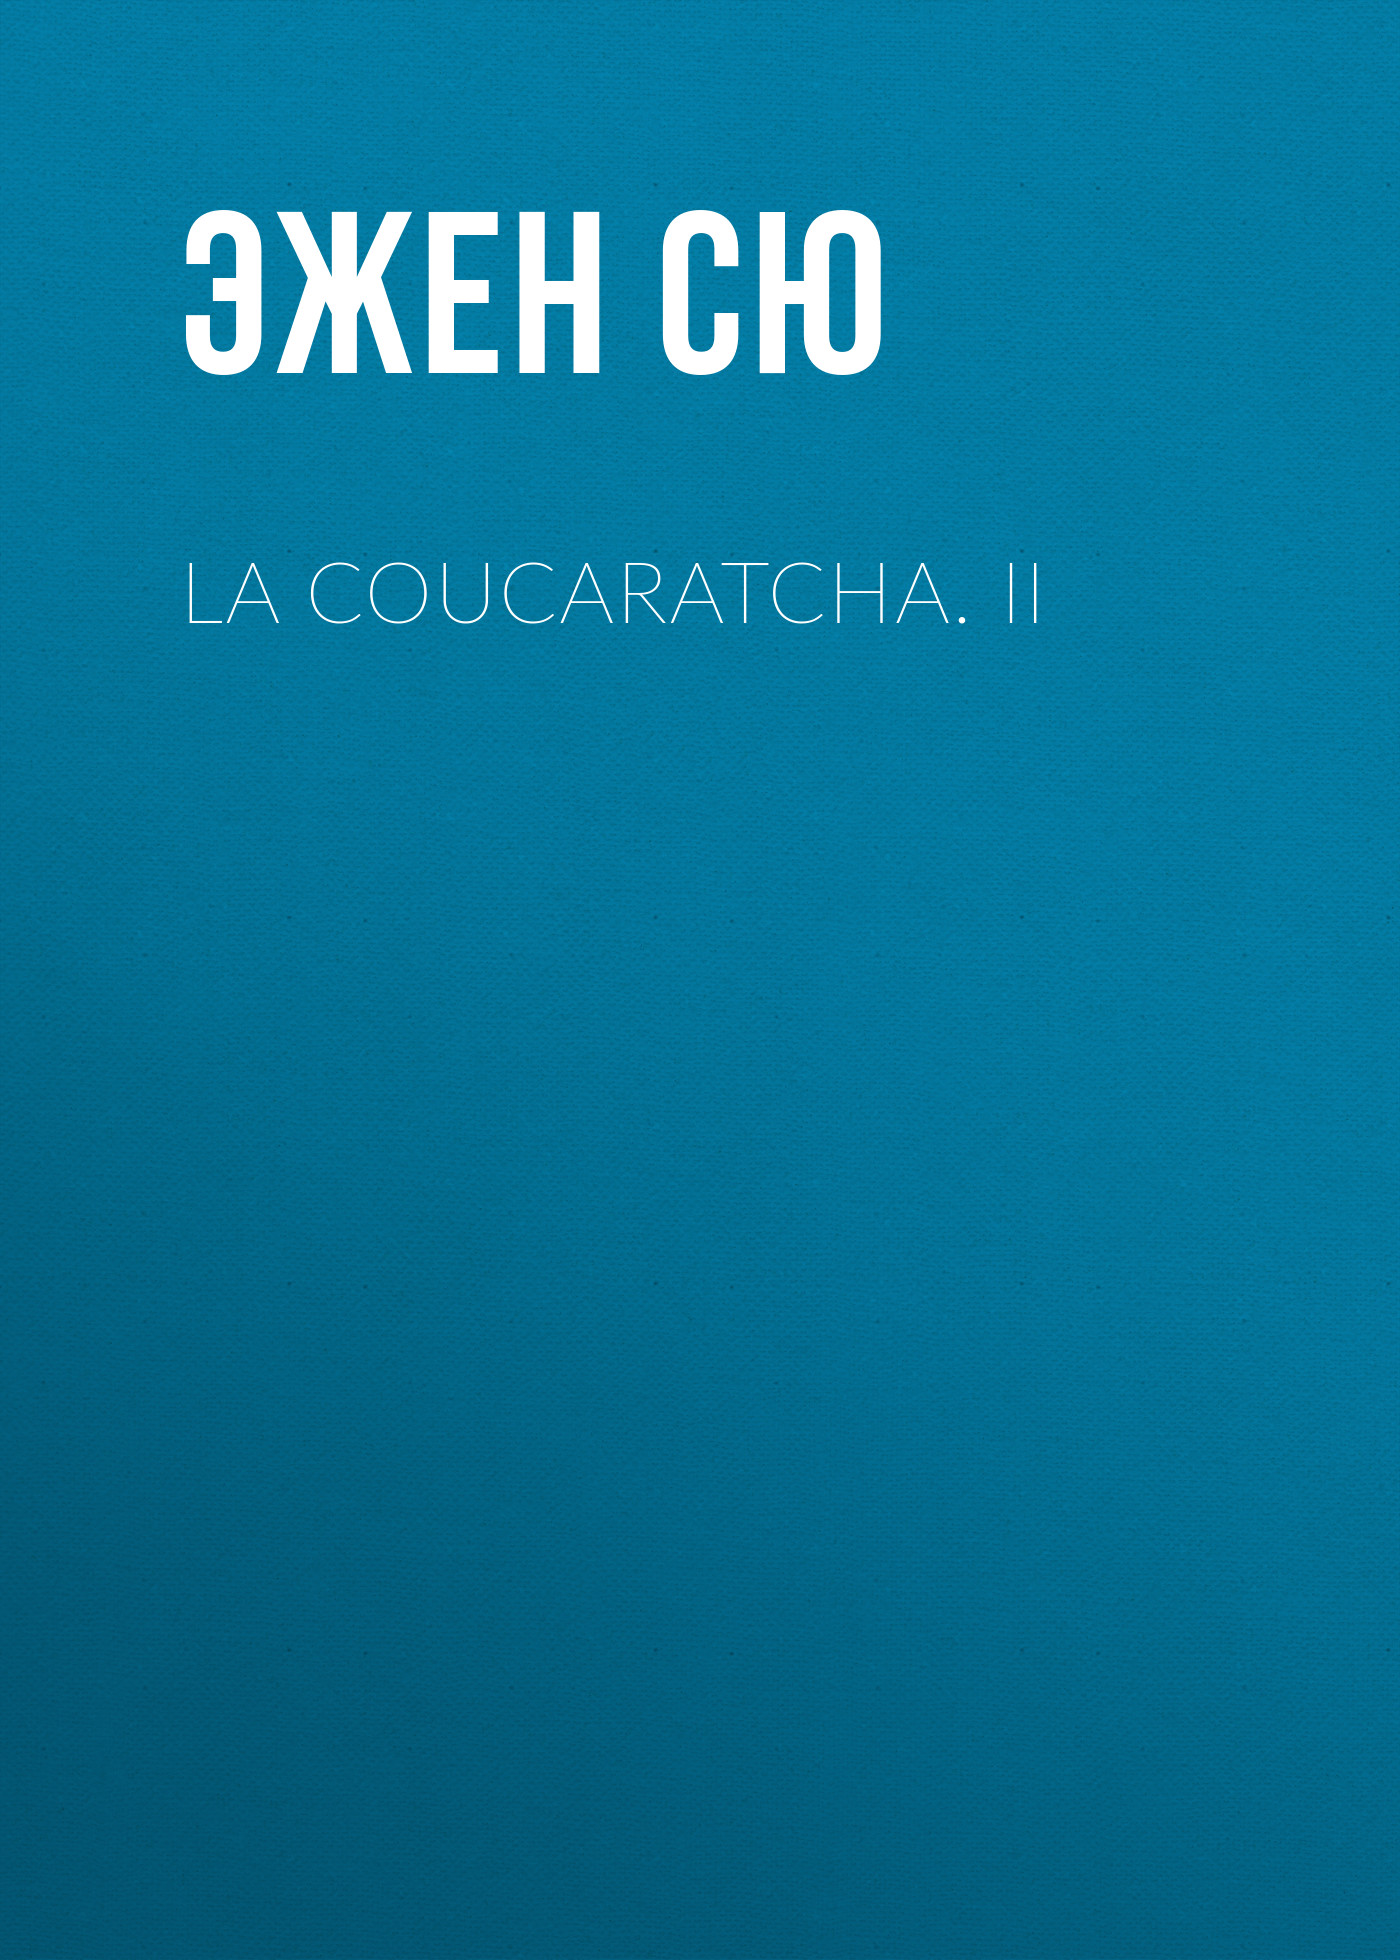 Книга La coucaratcha. II из серии , созданная Эжен Сю, может относится к жанру Литература 19 века, Зарубежная старинная литература, Зарубежная классика. Стоимость электронной книги La coucaratcha. II с идентификатором 25476831 составляет 0 руб.